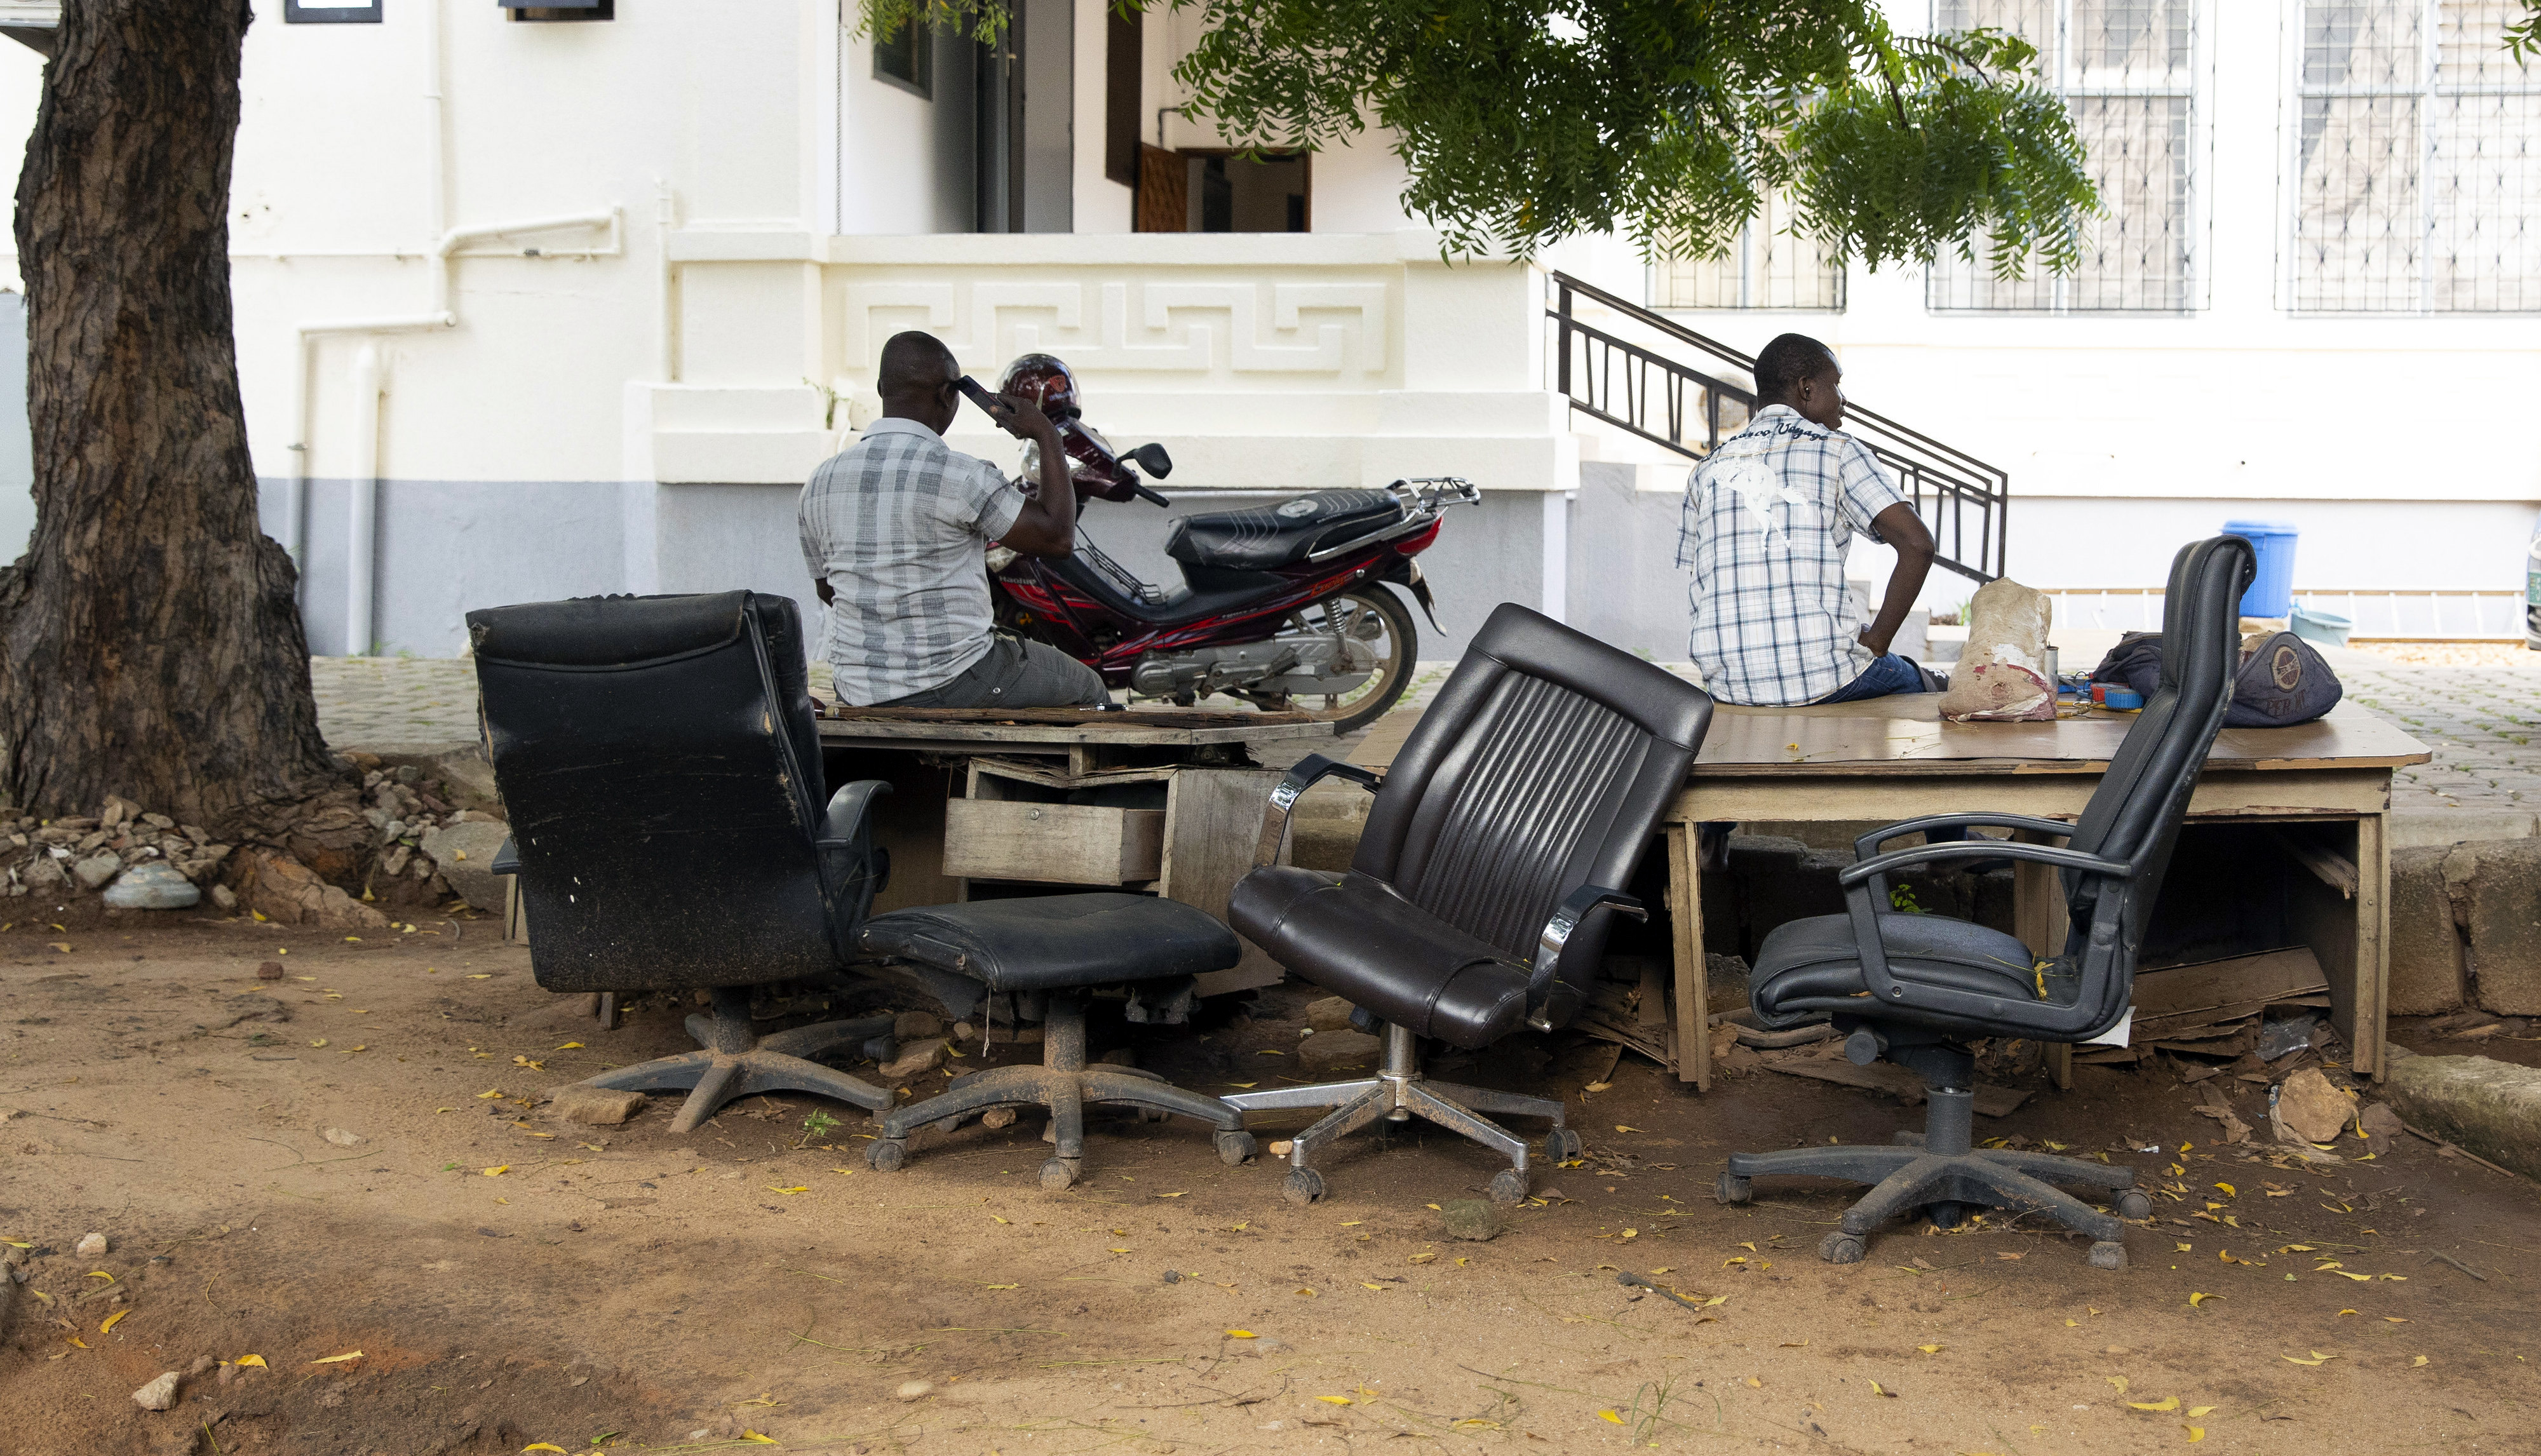 Straßenszene in Togo: Zwei Männer sitzen am Straßenrand auf alten Tischen